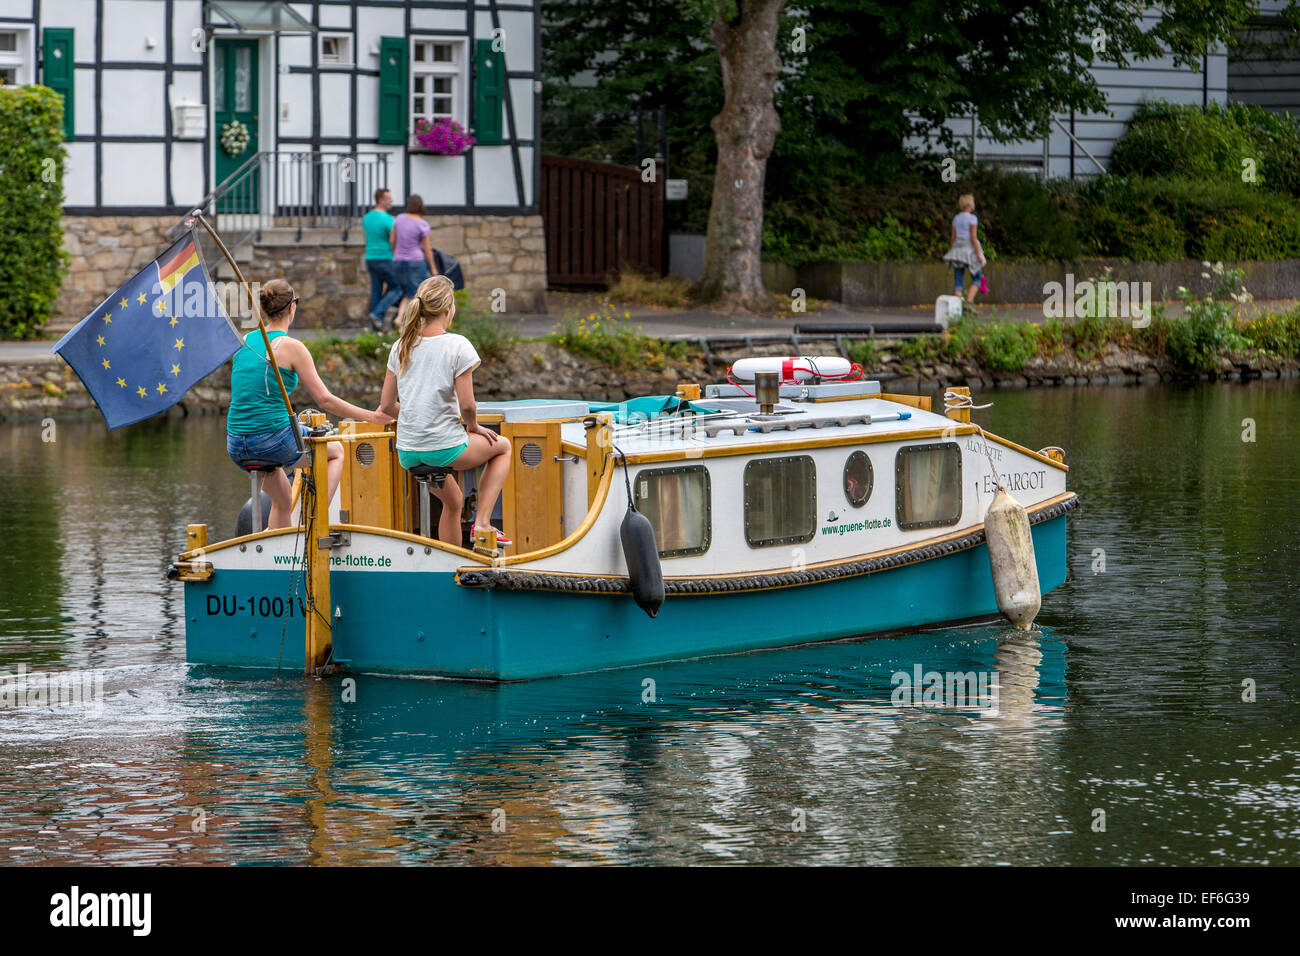 Tretboot, Hausboot "Escargot", selbst angetrieben Boot mit Platz für 4  Personen am Fluss Ruhr Stockfotografie - Alamy